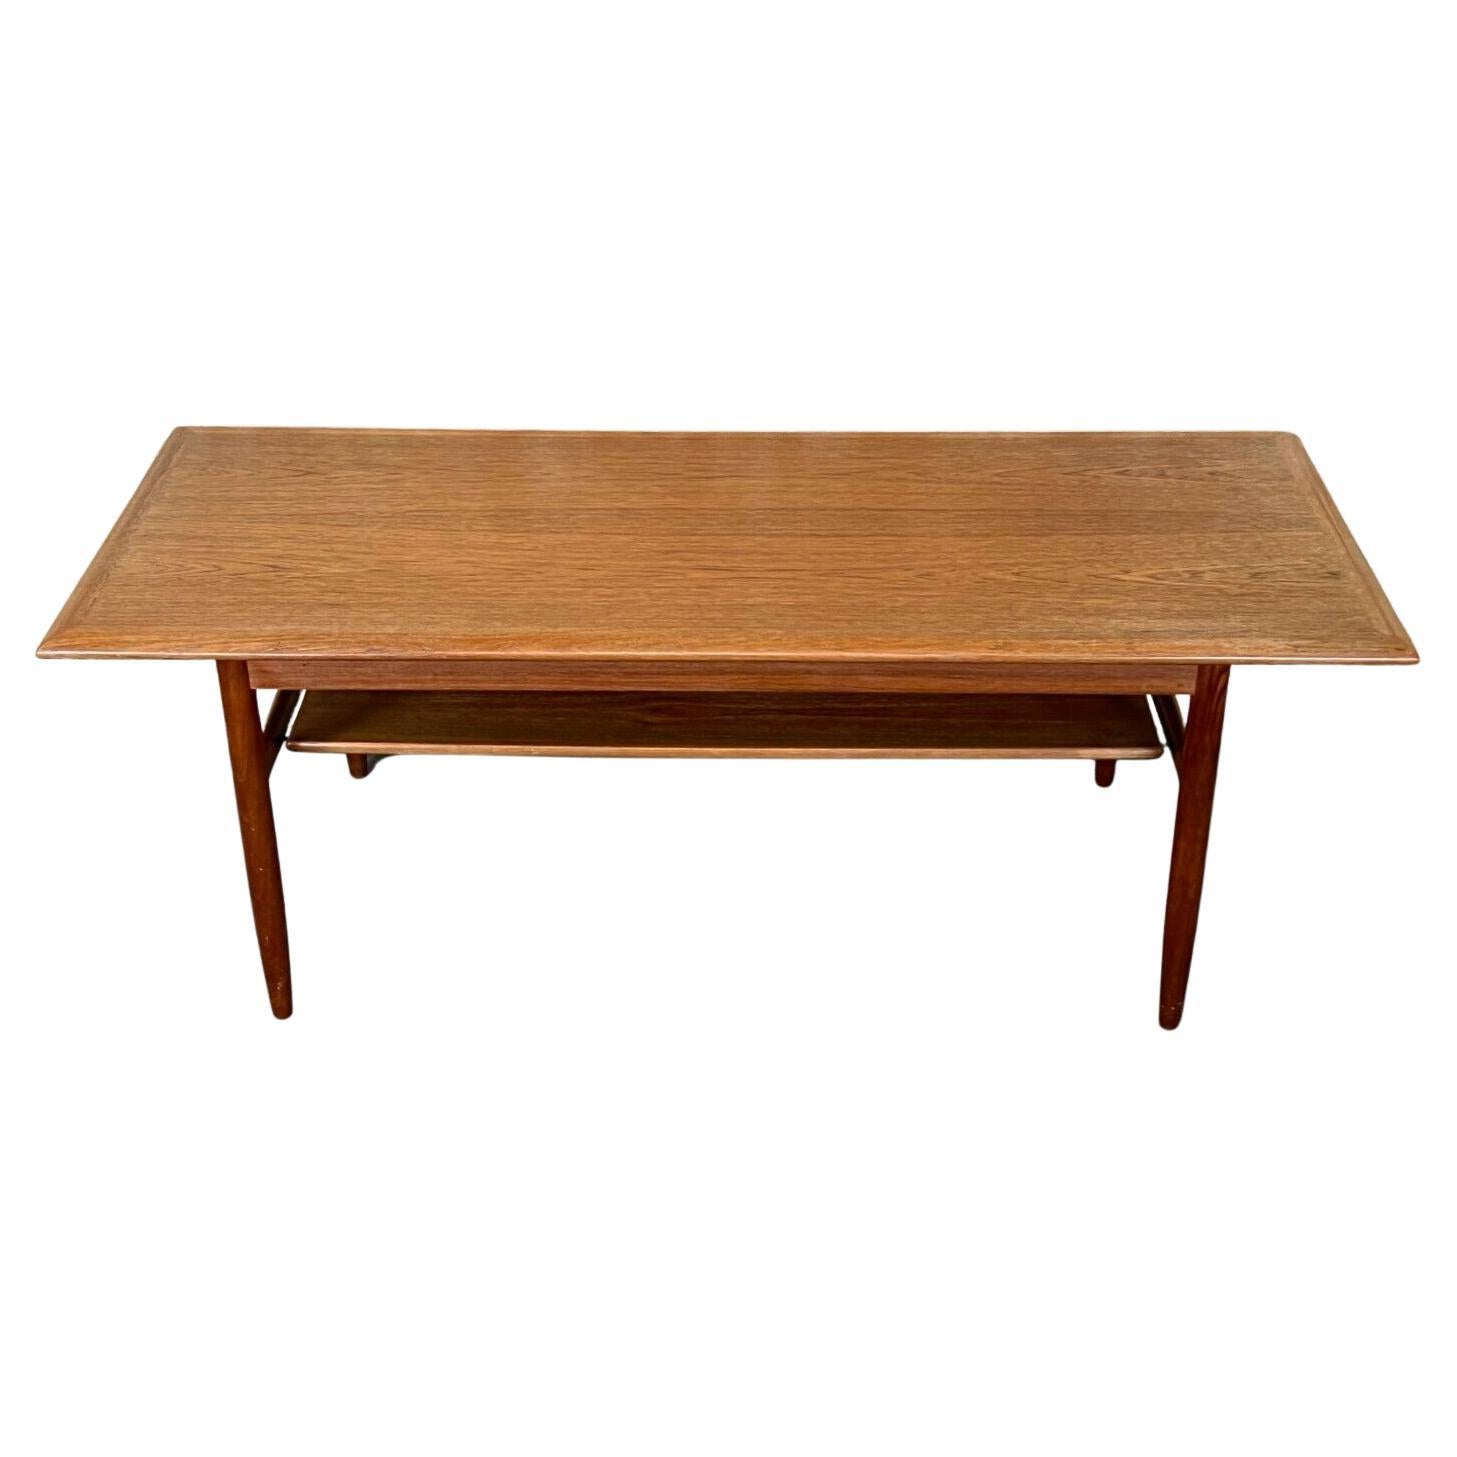 60s 70s Teak Table Coffee Table Danish Modern Design Denmark